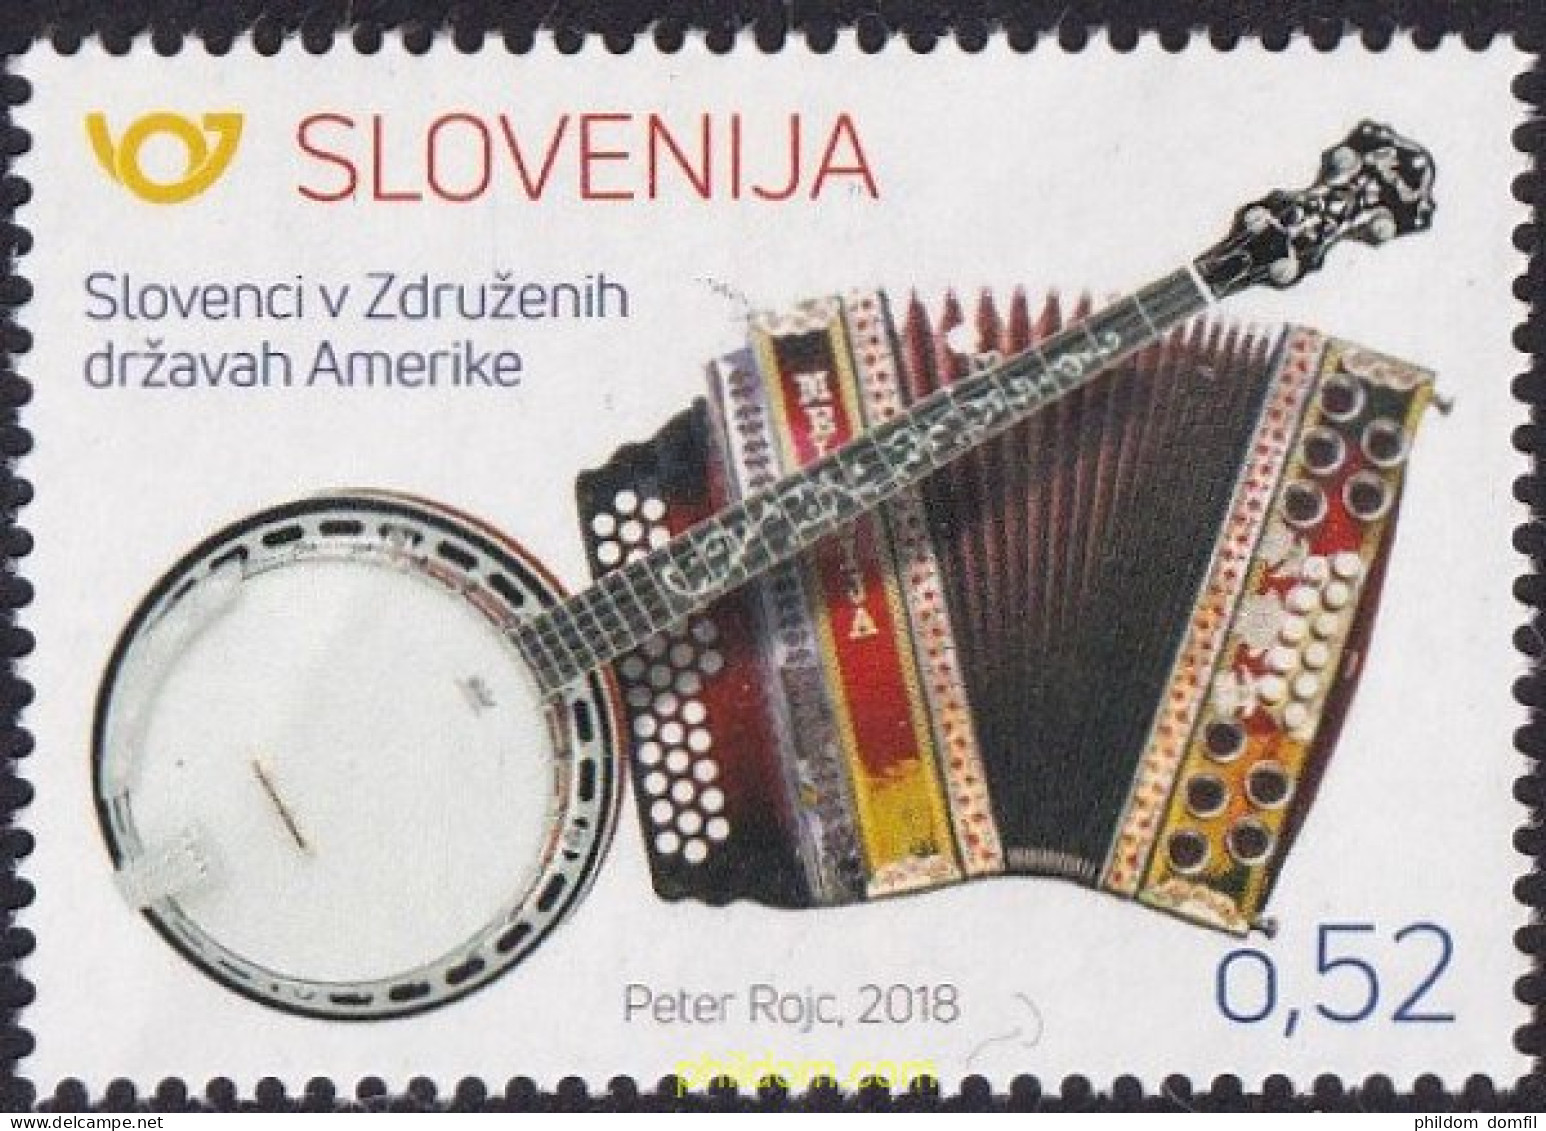 681511 MNH ESLOVENIA 2018 INSTRUMENTOS MUSICALES - Slovenië